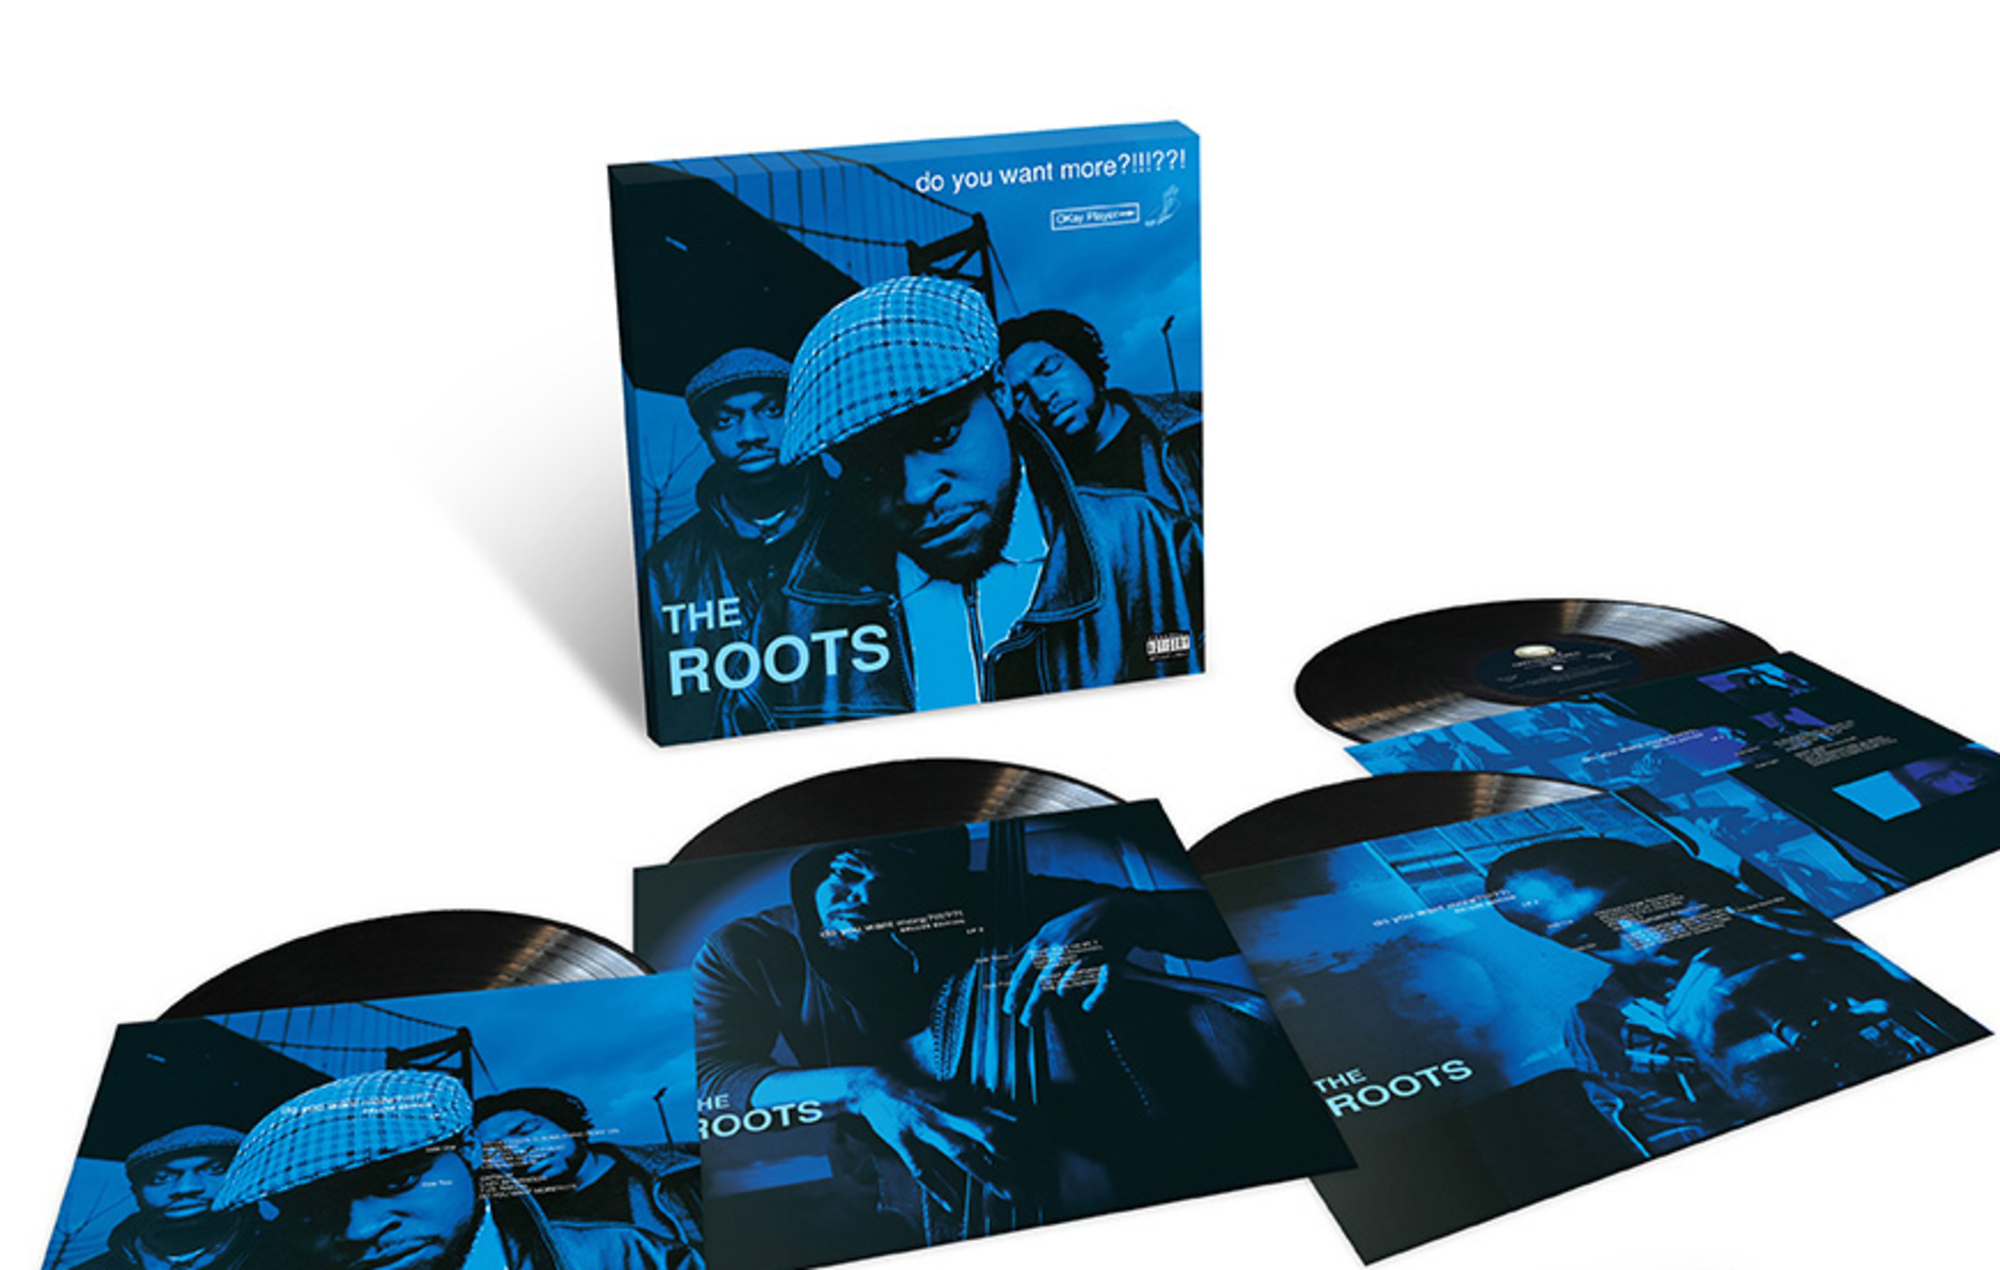 The Roots anuncia la reedición de lujo de su segundo álbum 'Do You Want More?!!?'